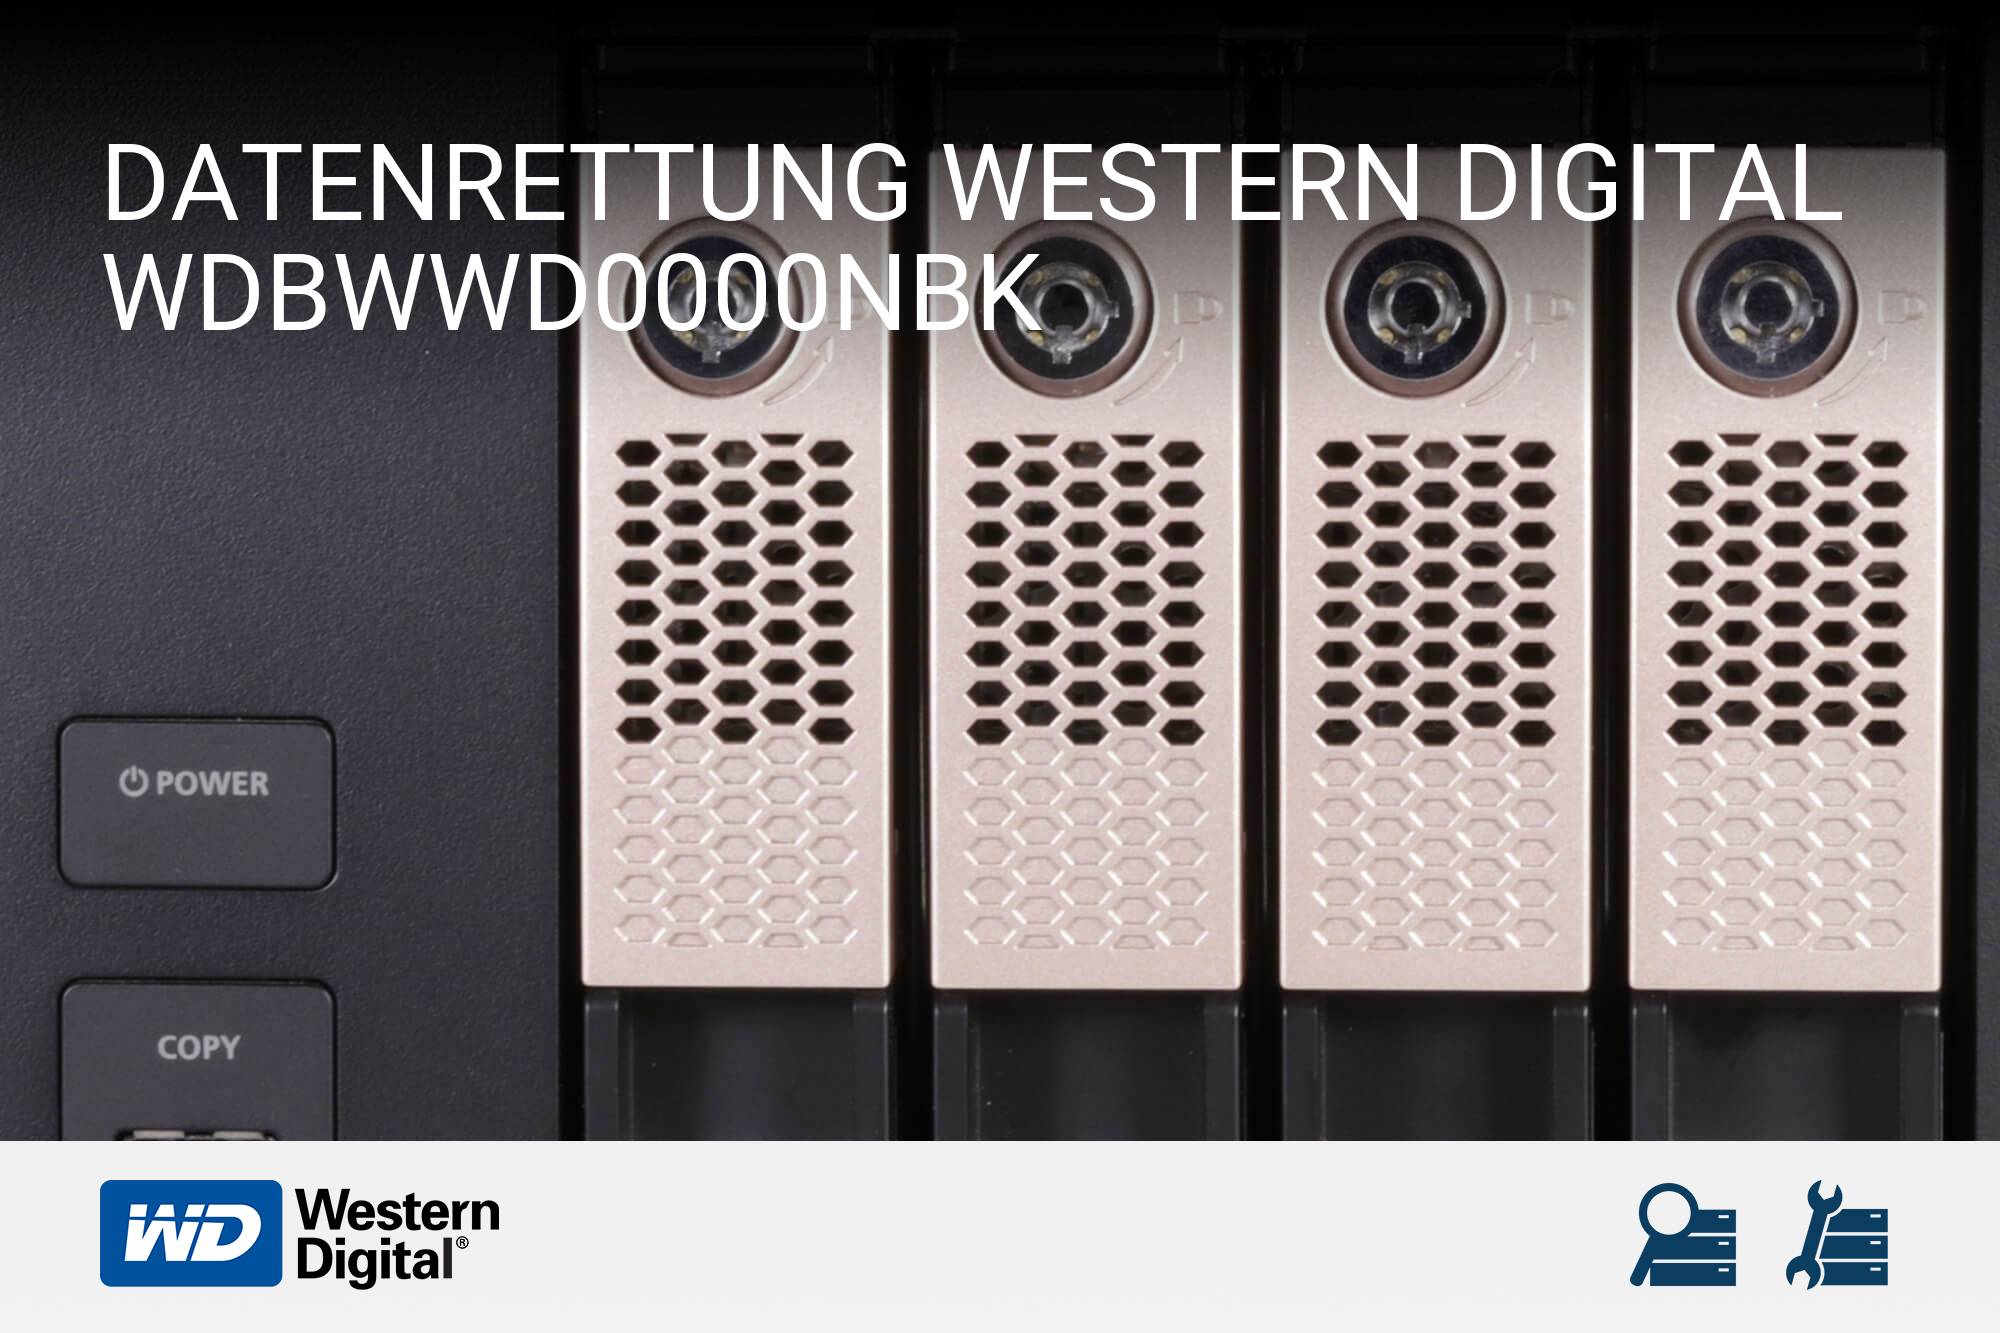 Western Digital WDBWWD0000NBK